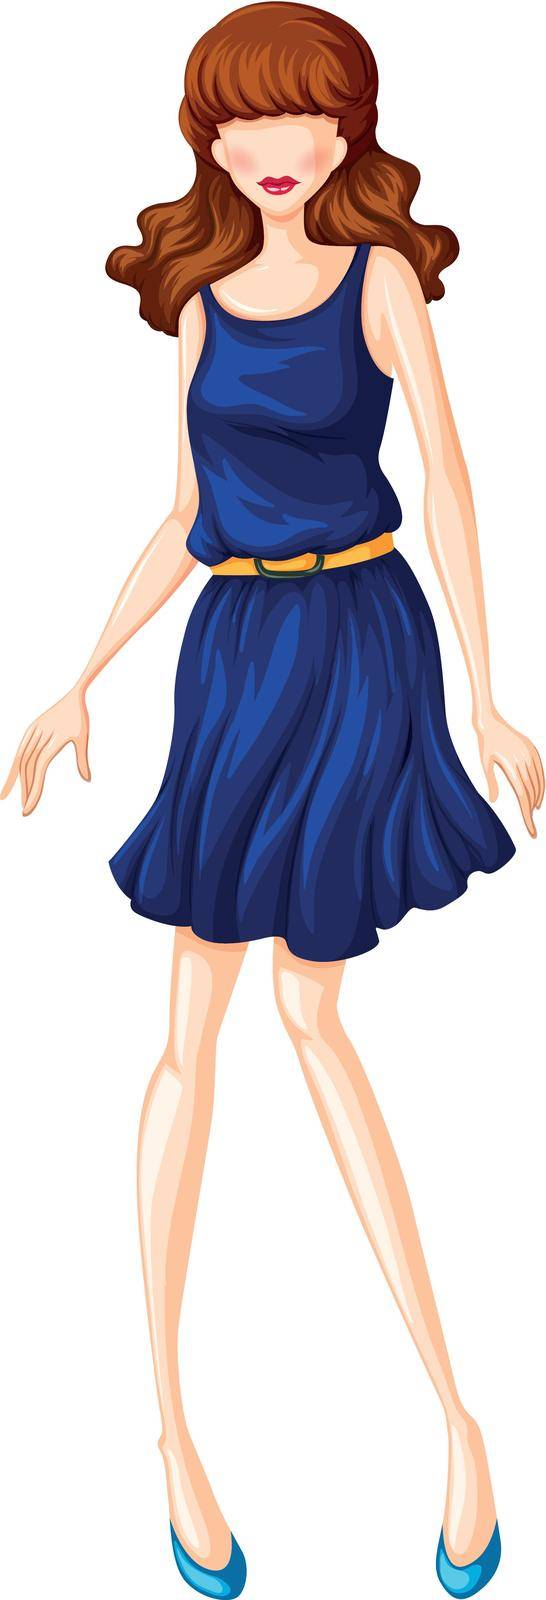 Female model in blue dress with belt